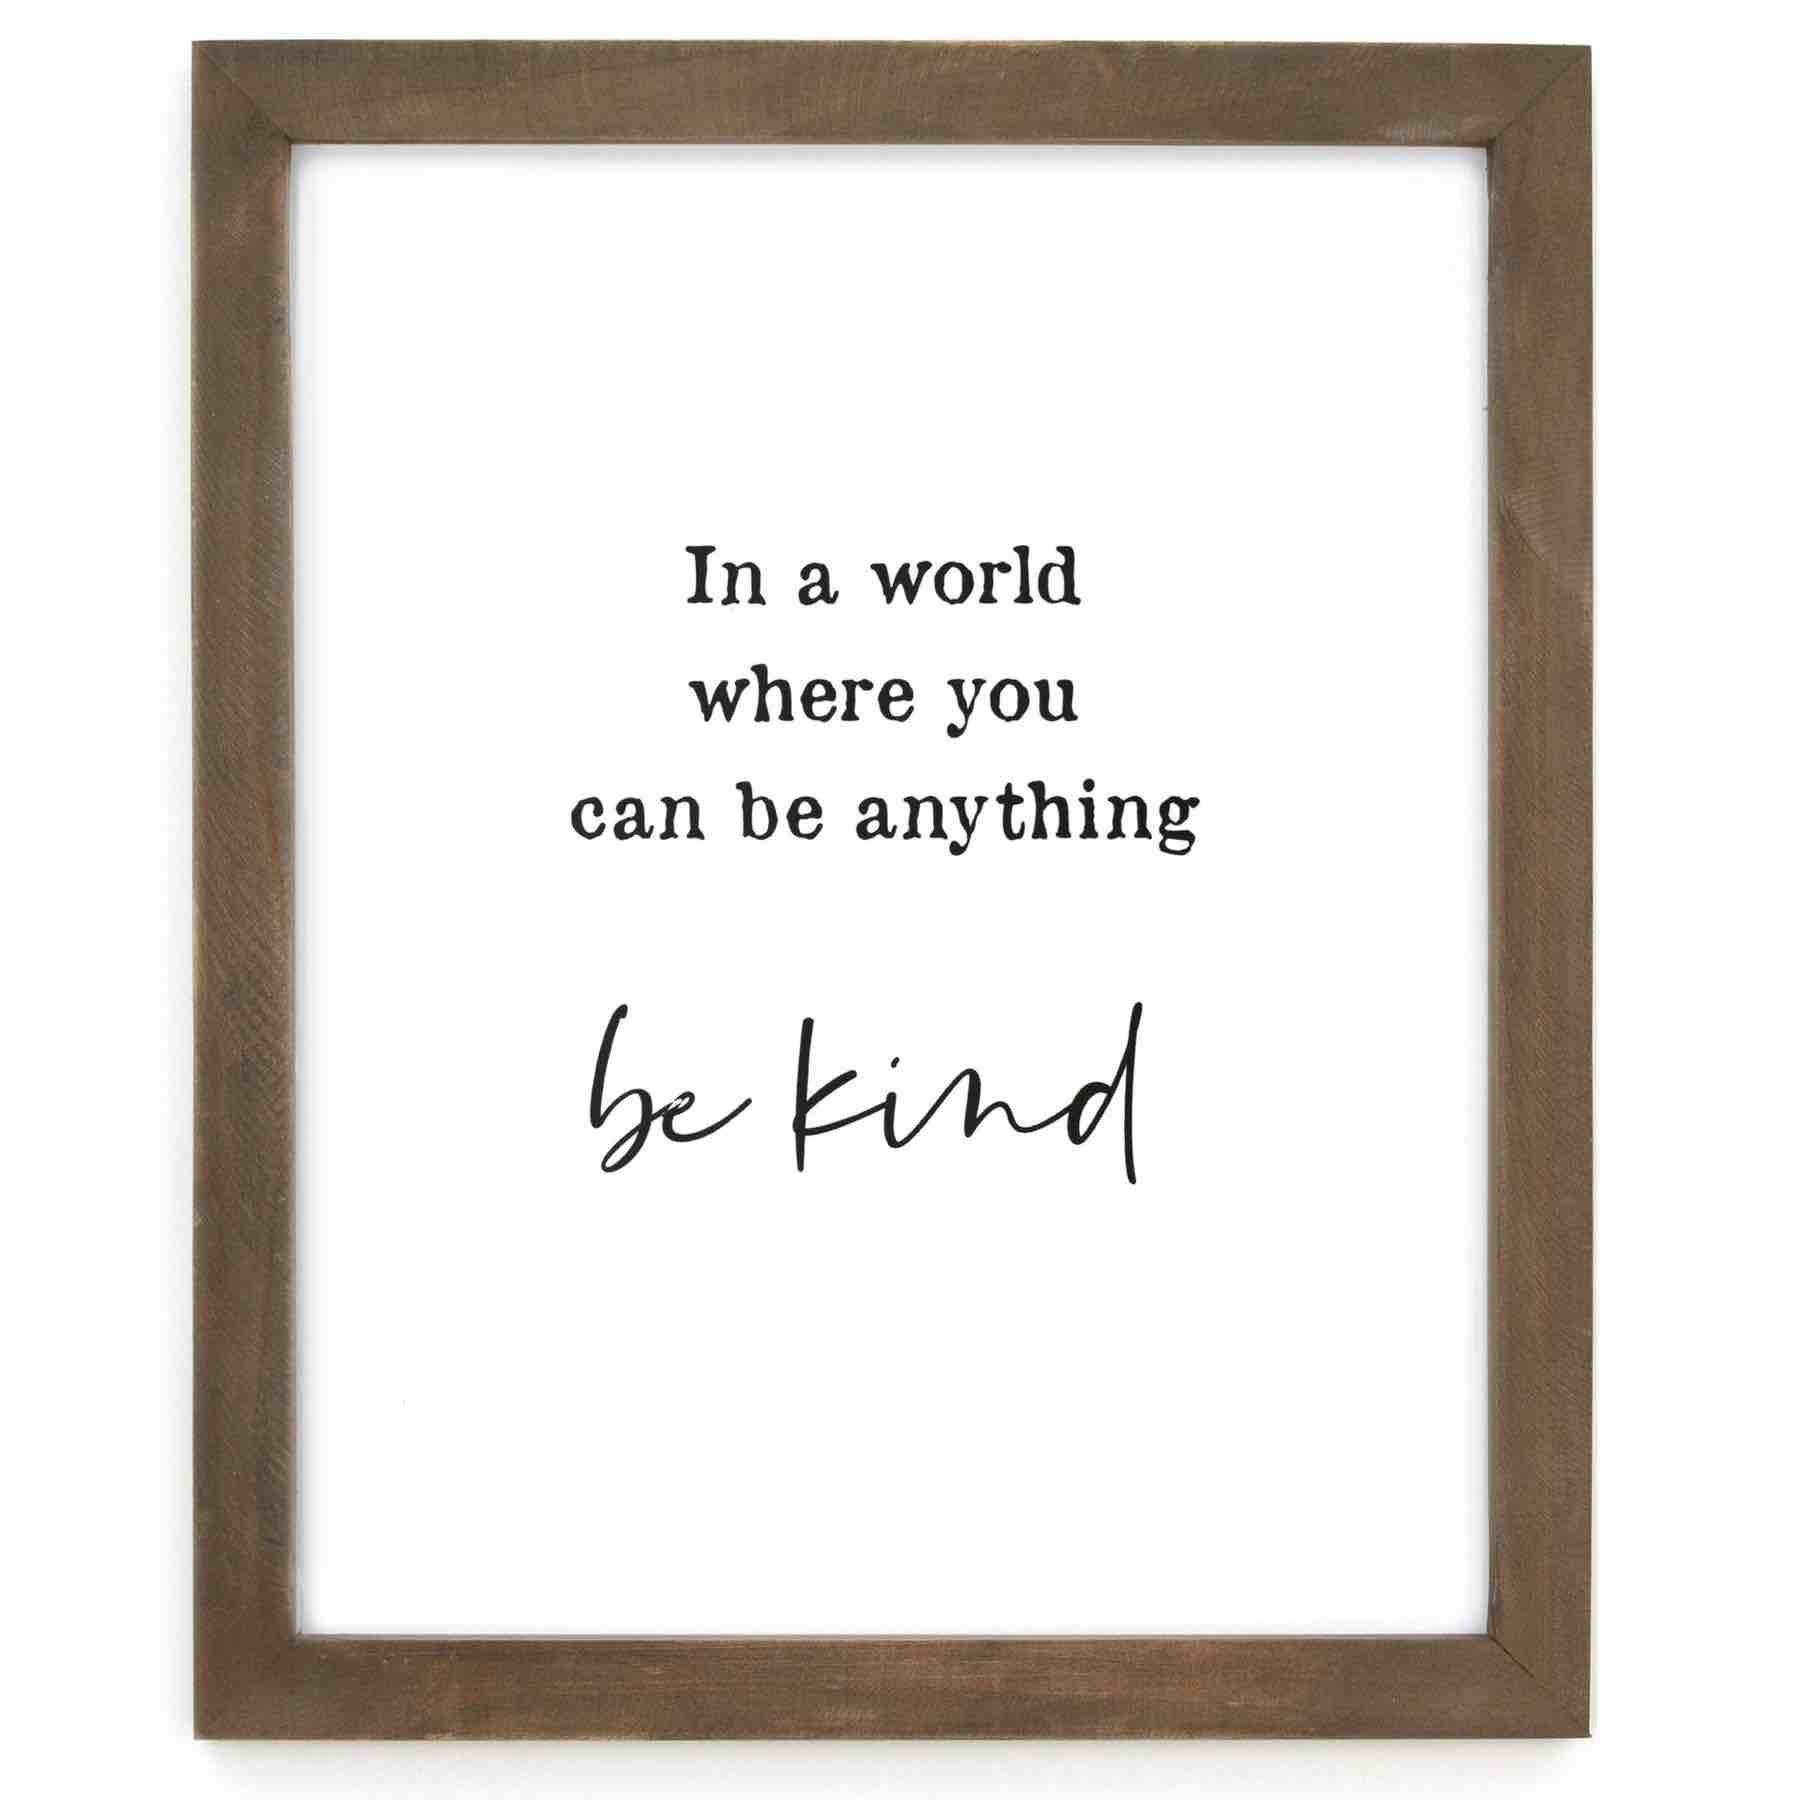 Cedar Mountain Framed Words | Be Kind